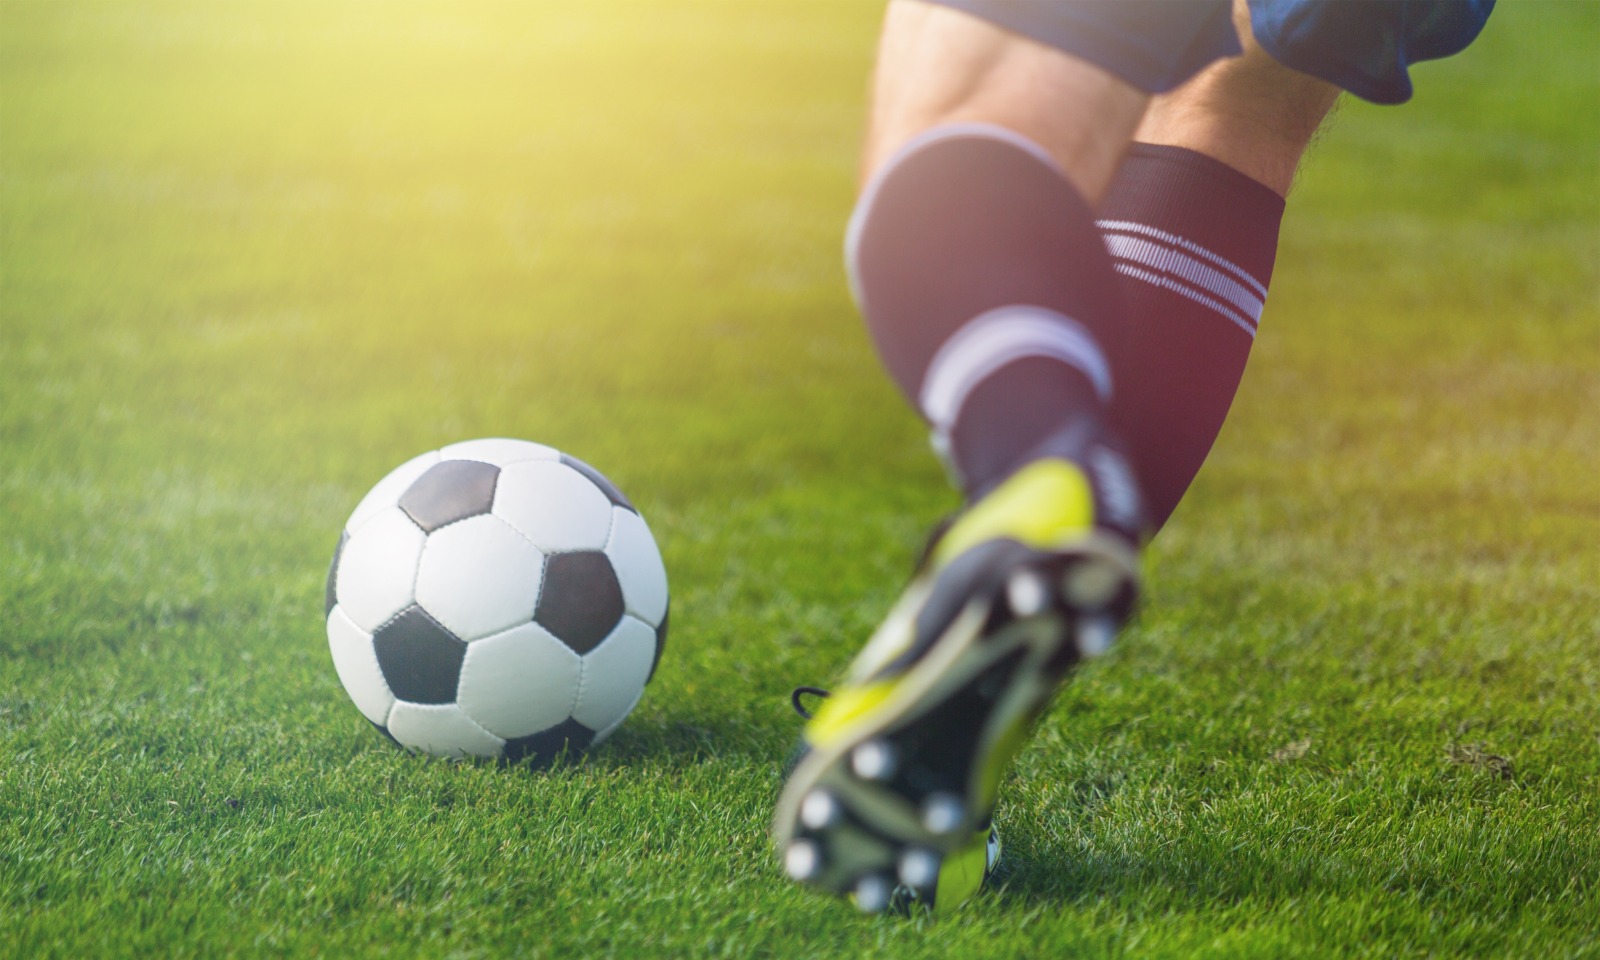 Imagem de um jogador, aparecendo apenas as pernas, correndo atrás de uma bola de futebol.